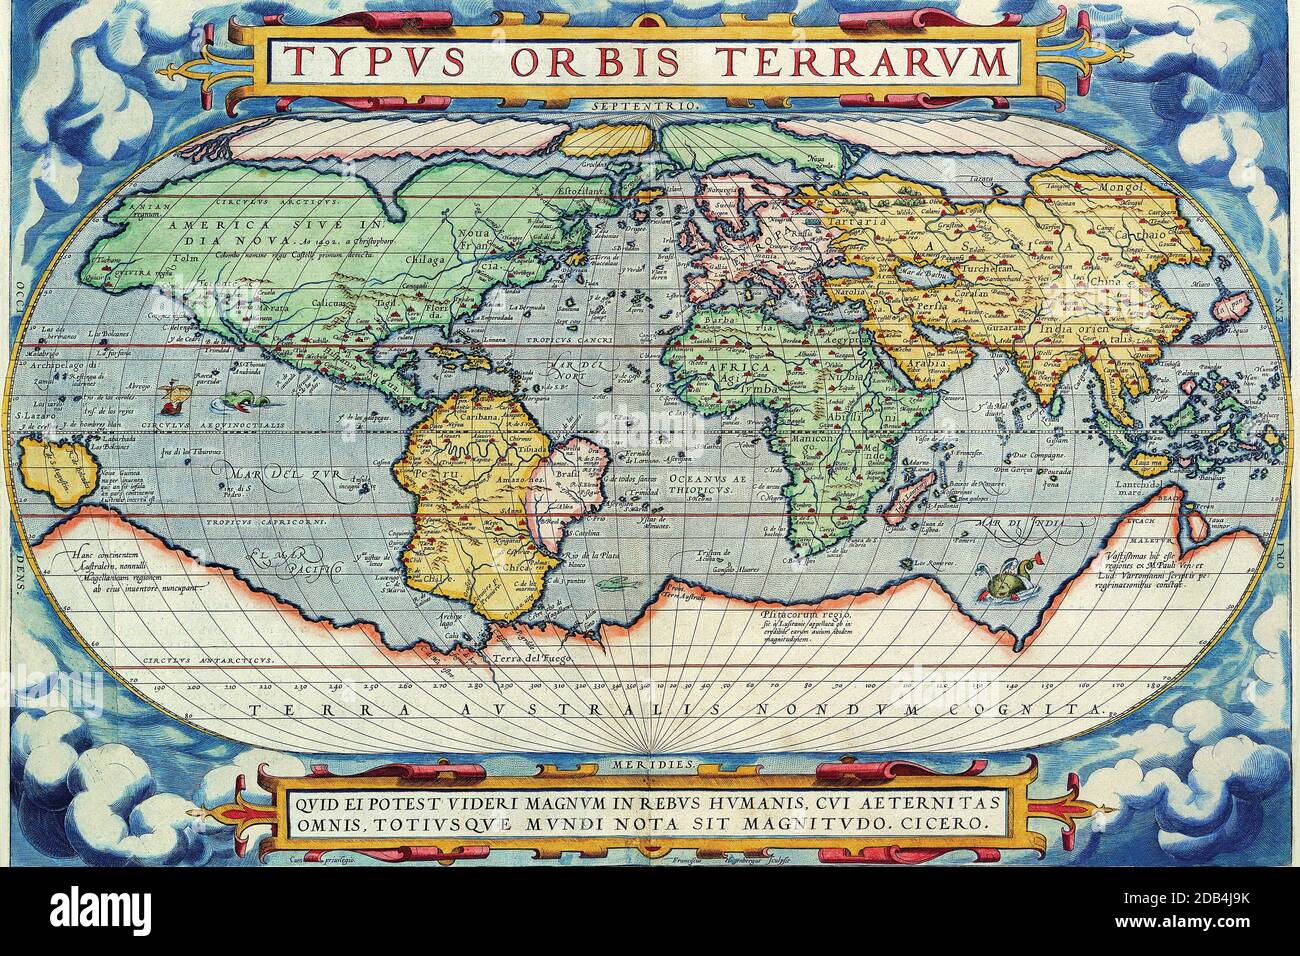 'Abraham Ortelius (Abraham Ortelius) (14. April 1527 ? 28. Juni 1598) war ein flämischer Kartograph und Geograph, allgemein anerkannt als Schöpfer des ersten modernen Atlas, des Theatrum Orbis Terrarum (Theater der Welt). Er wird auch geglaubt, um die erste Person zu sein, die sich vorstellt, dass die Kontinente zusammengeschlossen wurden, bevor sie zu ihren gegenwärtigen Positionen driftten. 1564 vollendete er eine 'Appemonde', achtblättrige Weltkarte, die später in reduzierter Form im Theatrum erschien. Die einzige erhaltene Kopie dieser großartigen Karte befindet sich in der Bibliothek der Universität Basel. Am 20. Mai 1570, Gill Stockfoto